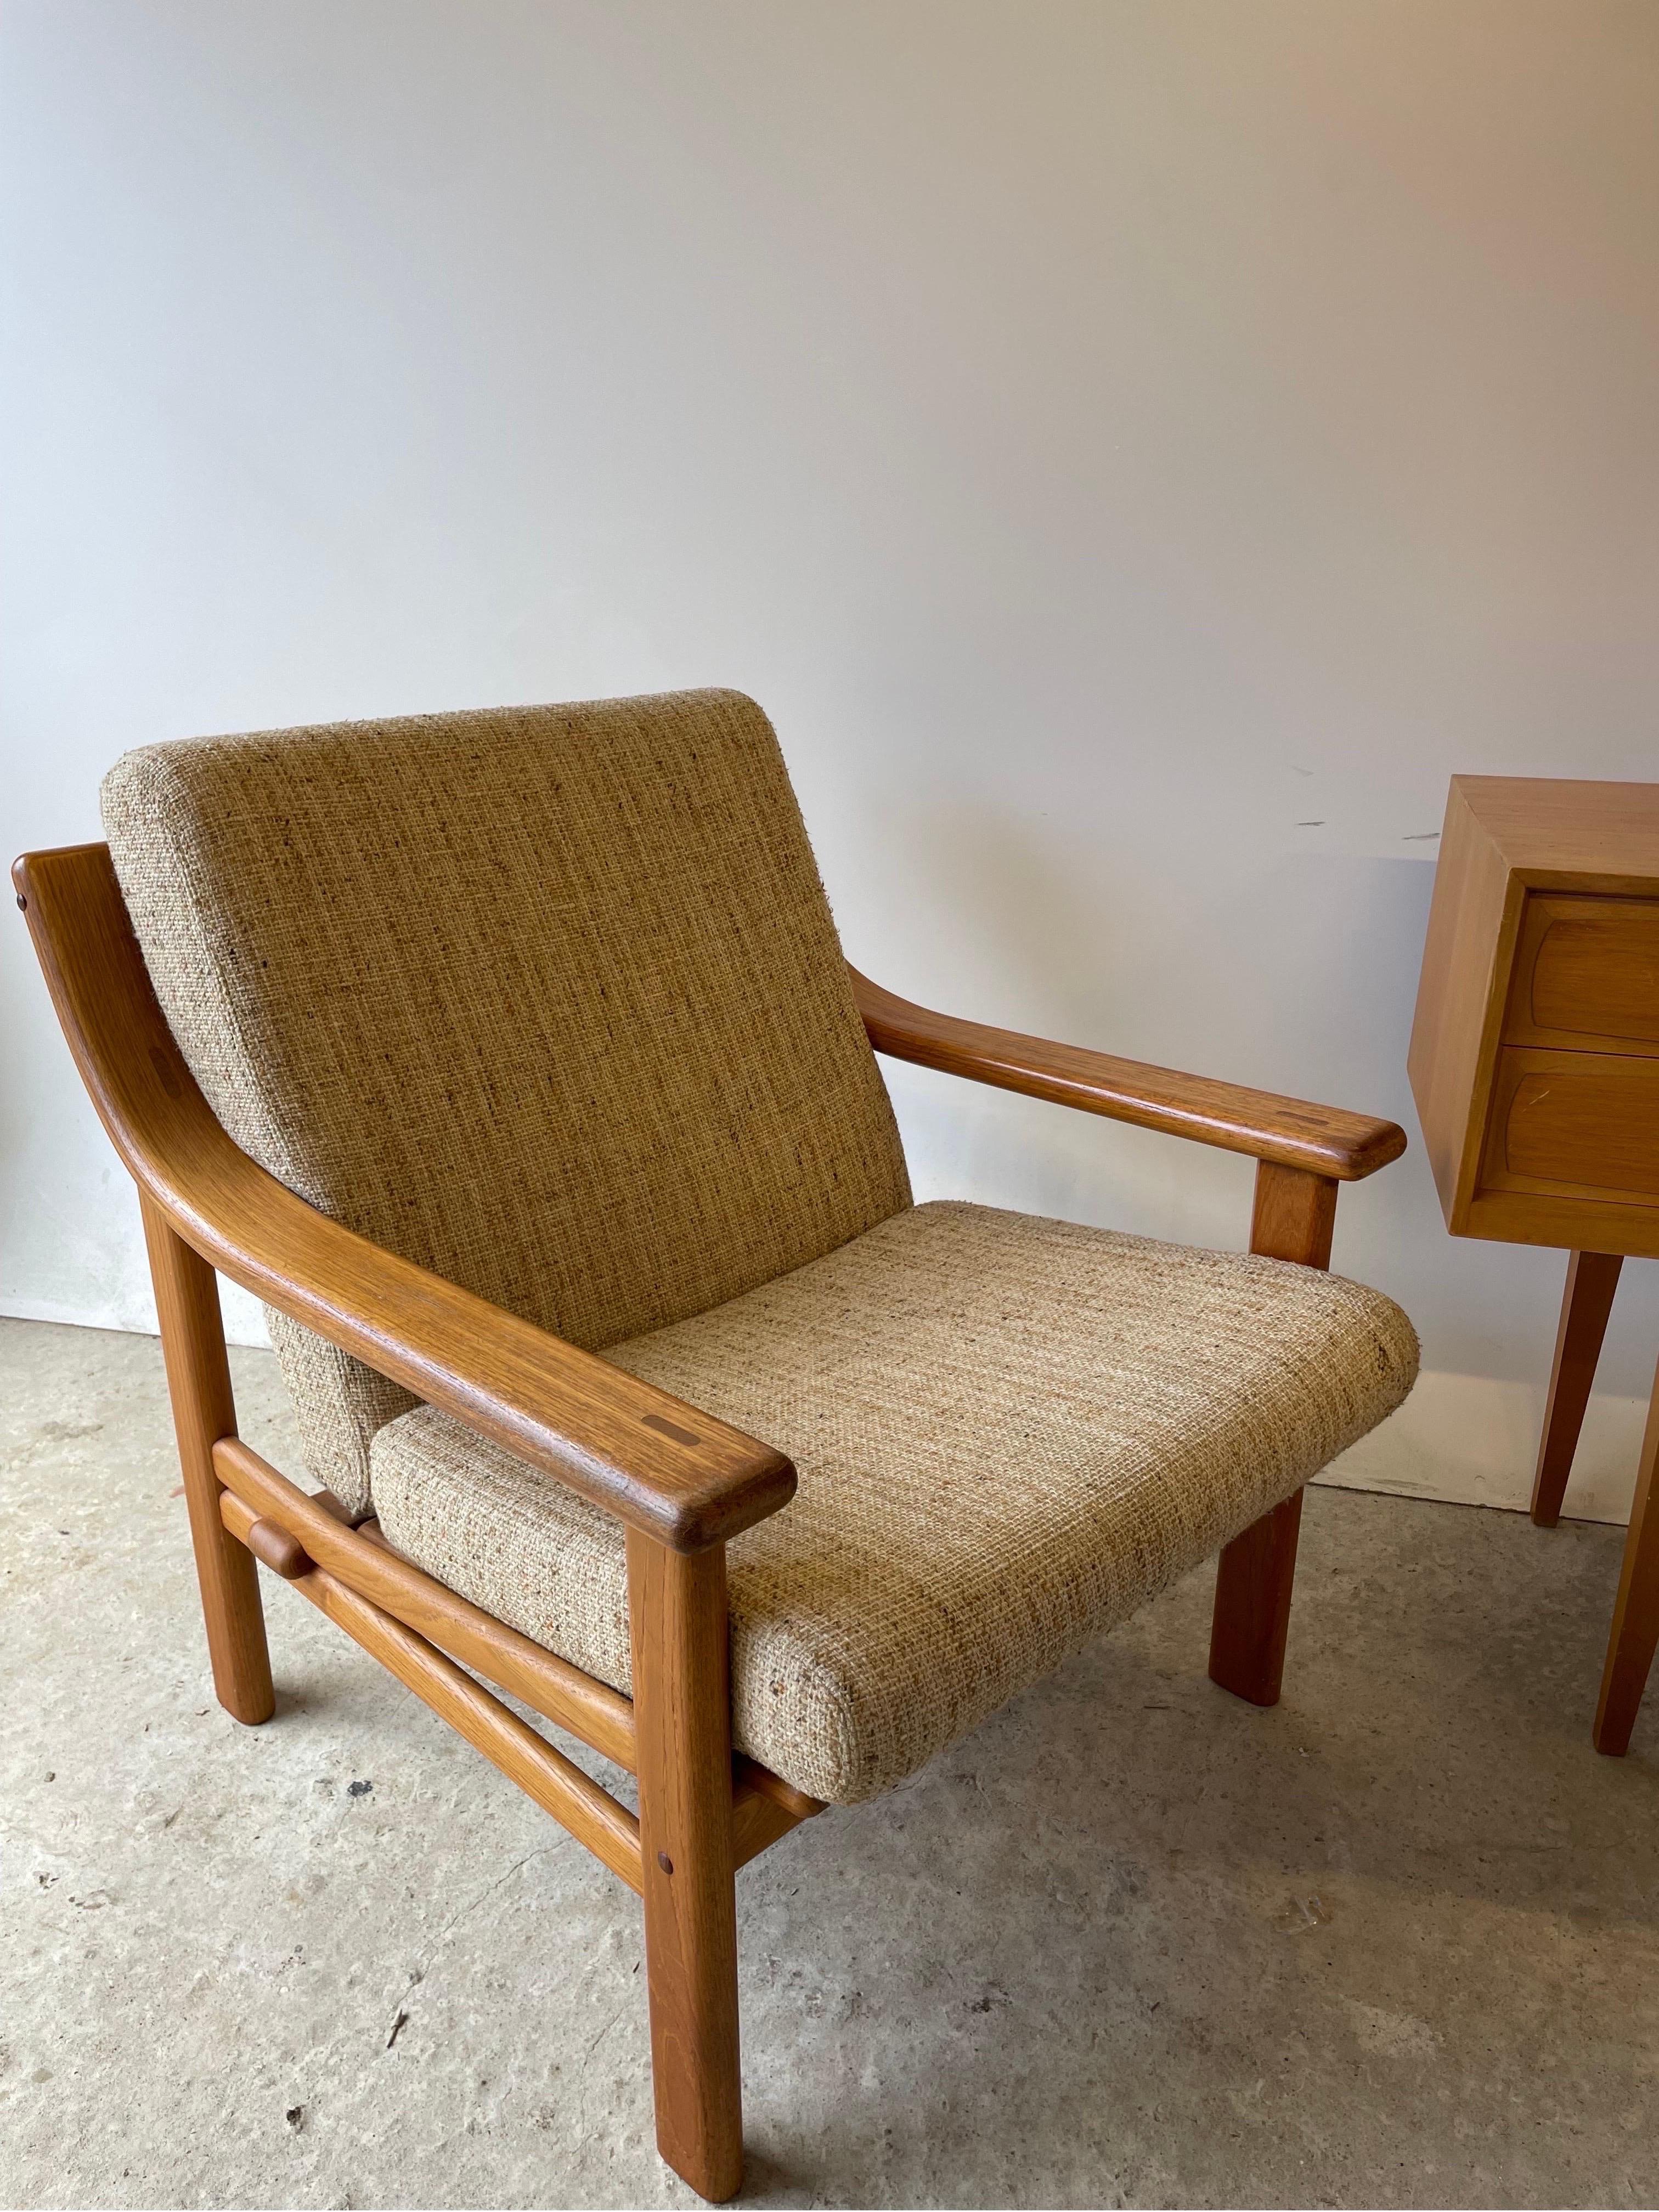 Dänischer Loungesessel aus Teakholz aus der Jahrhundertmitte in Silkeborg gefertigt.

Die helle Wolle passt hervorragend zum massiven Teak Holz. Mit seinen natürlichen Töne lässt sich der Sessel hervorragend mit organischen und minimalistischen